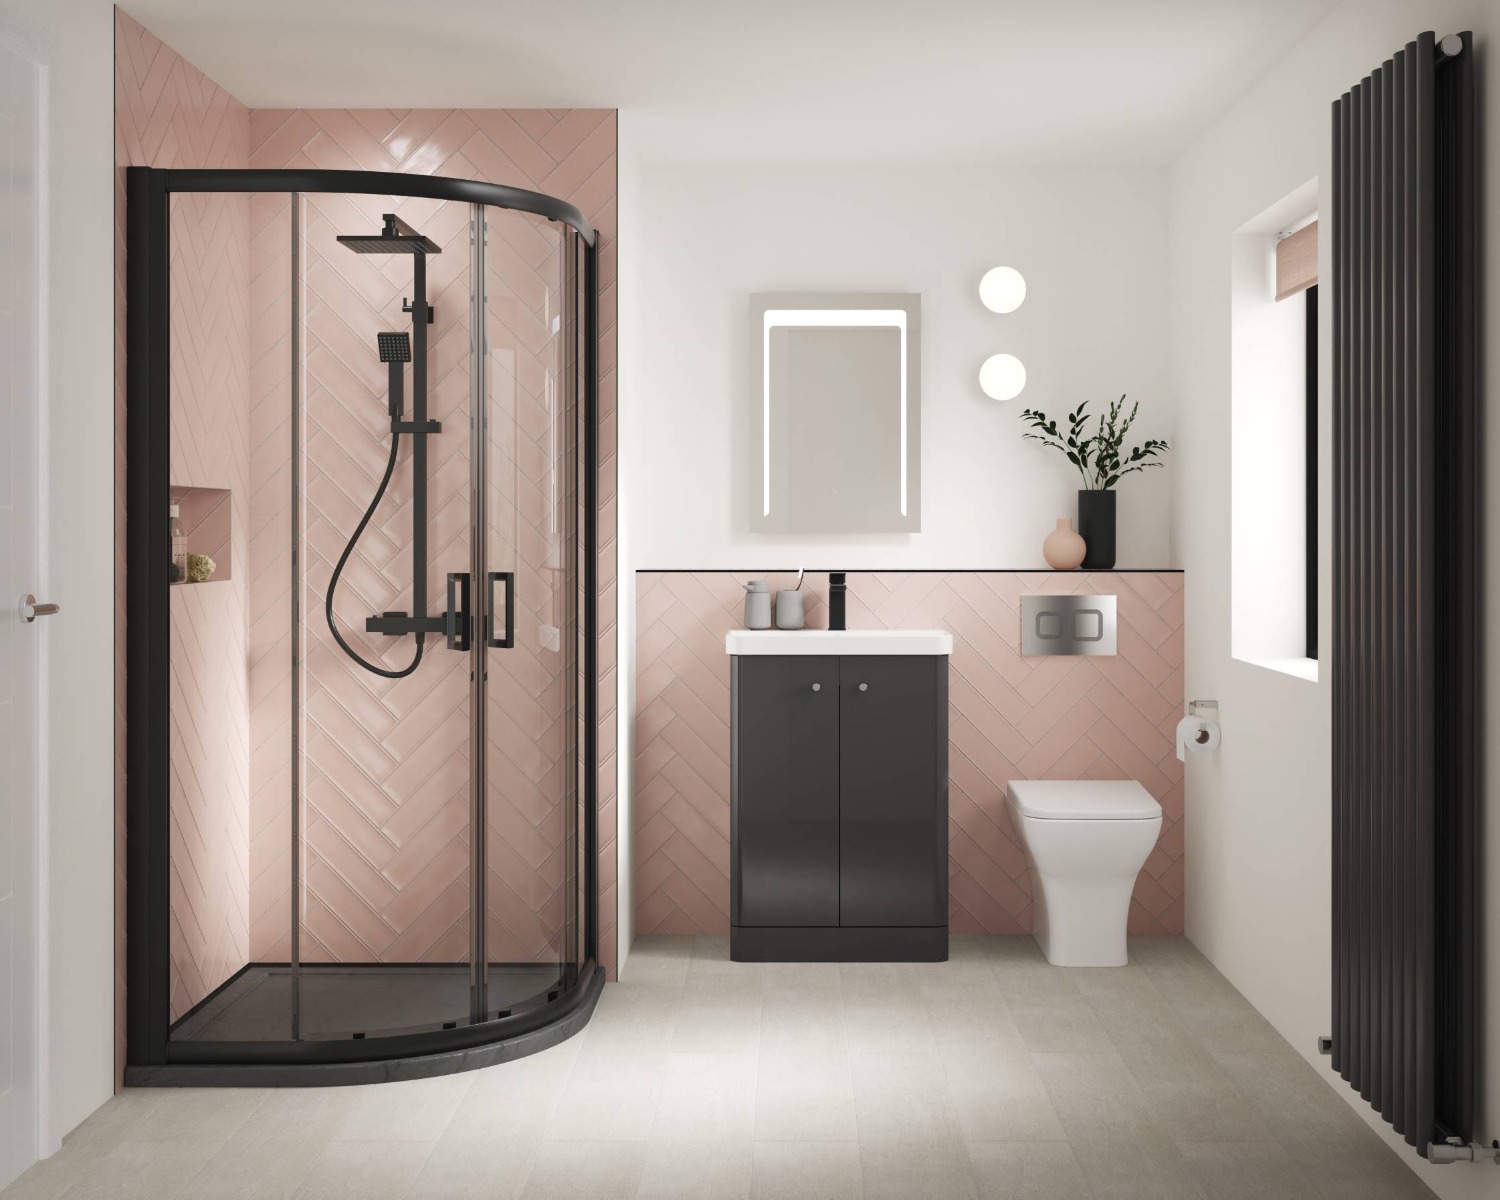 pink shower